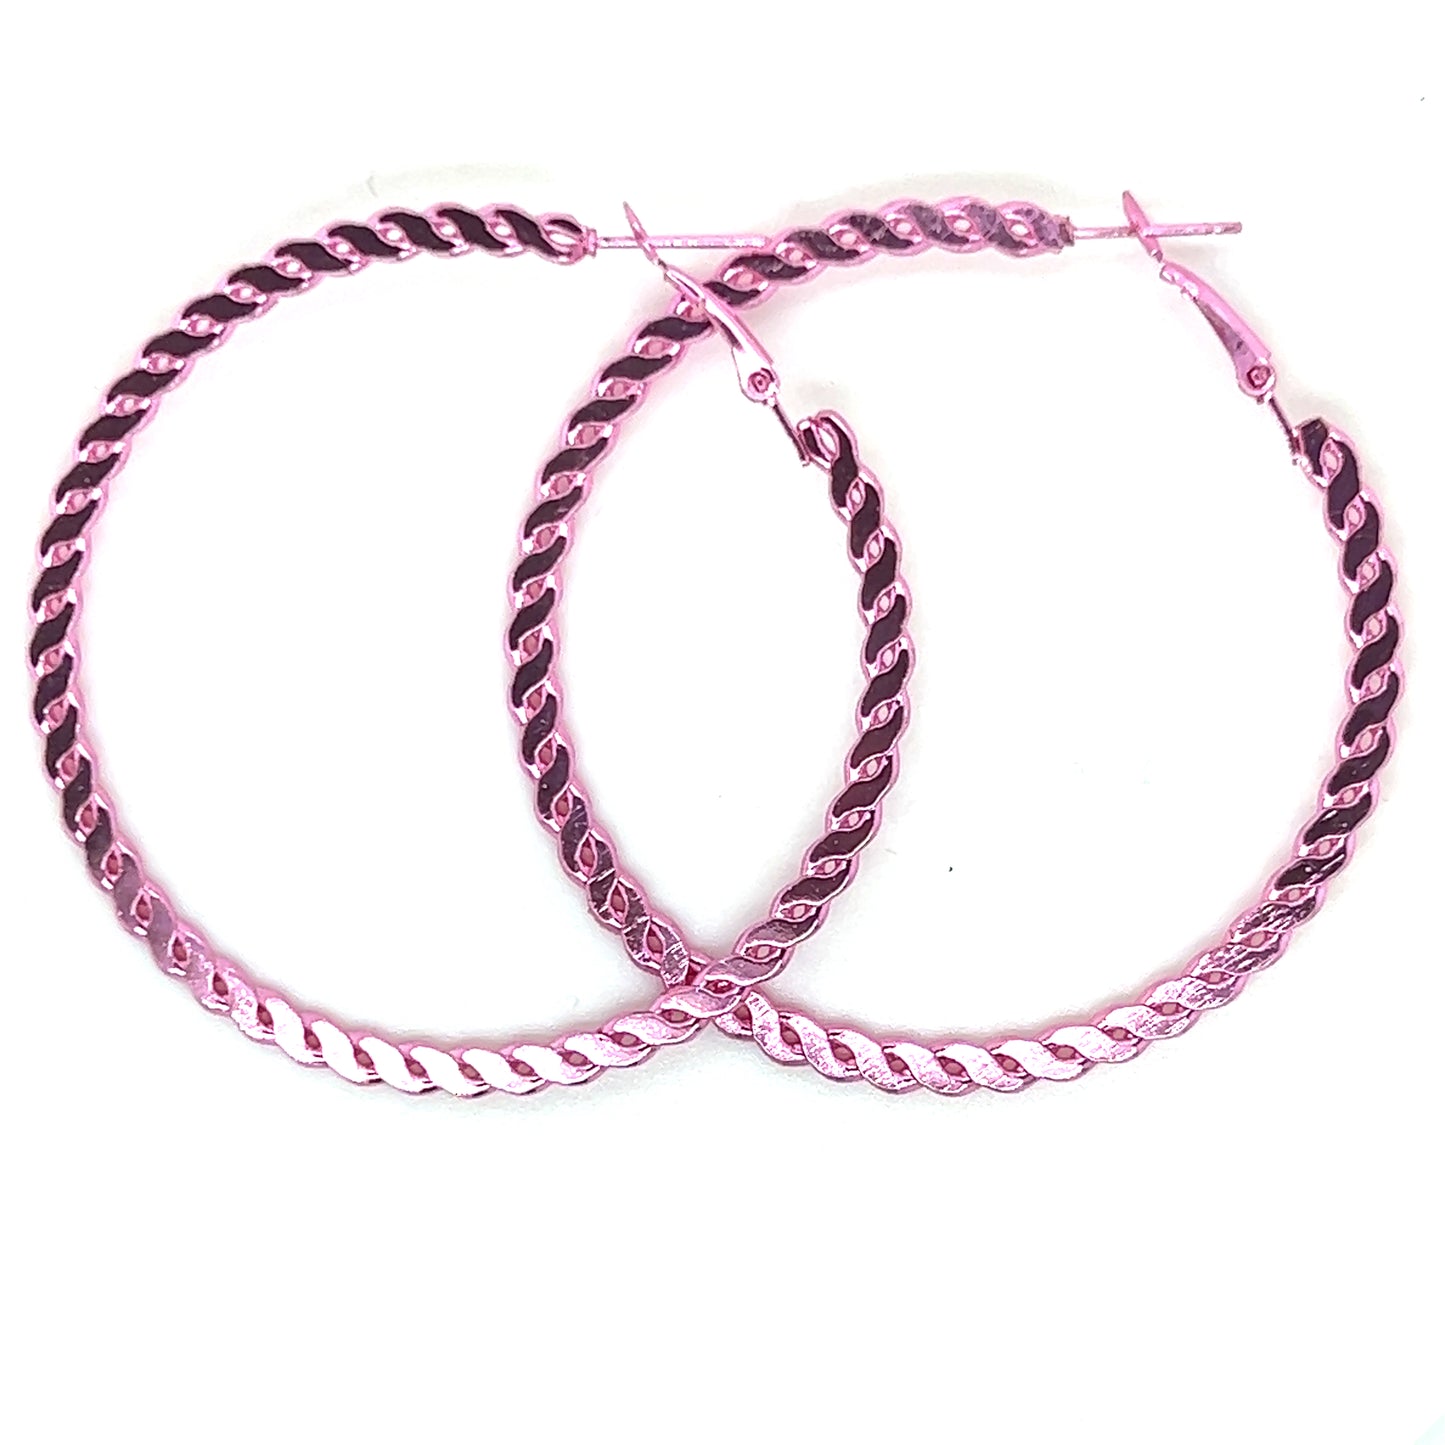 Fixed Chain Link Metallic Hoop Earrings - In 6 Colors